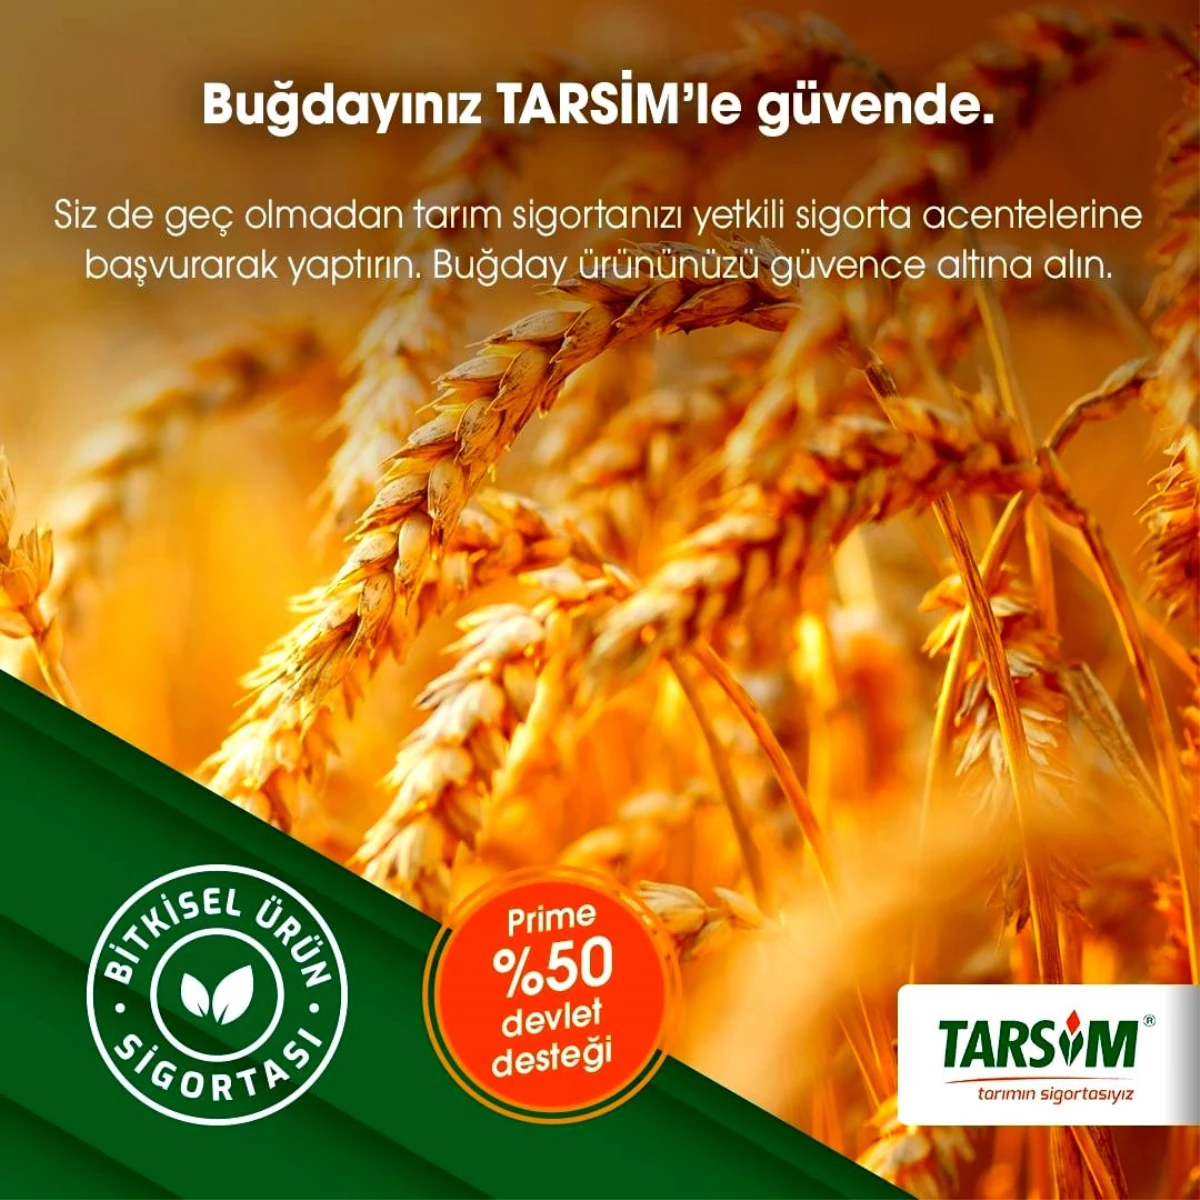 TARSİM: "Buğday ürününüz güvende"